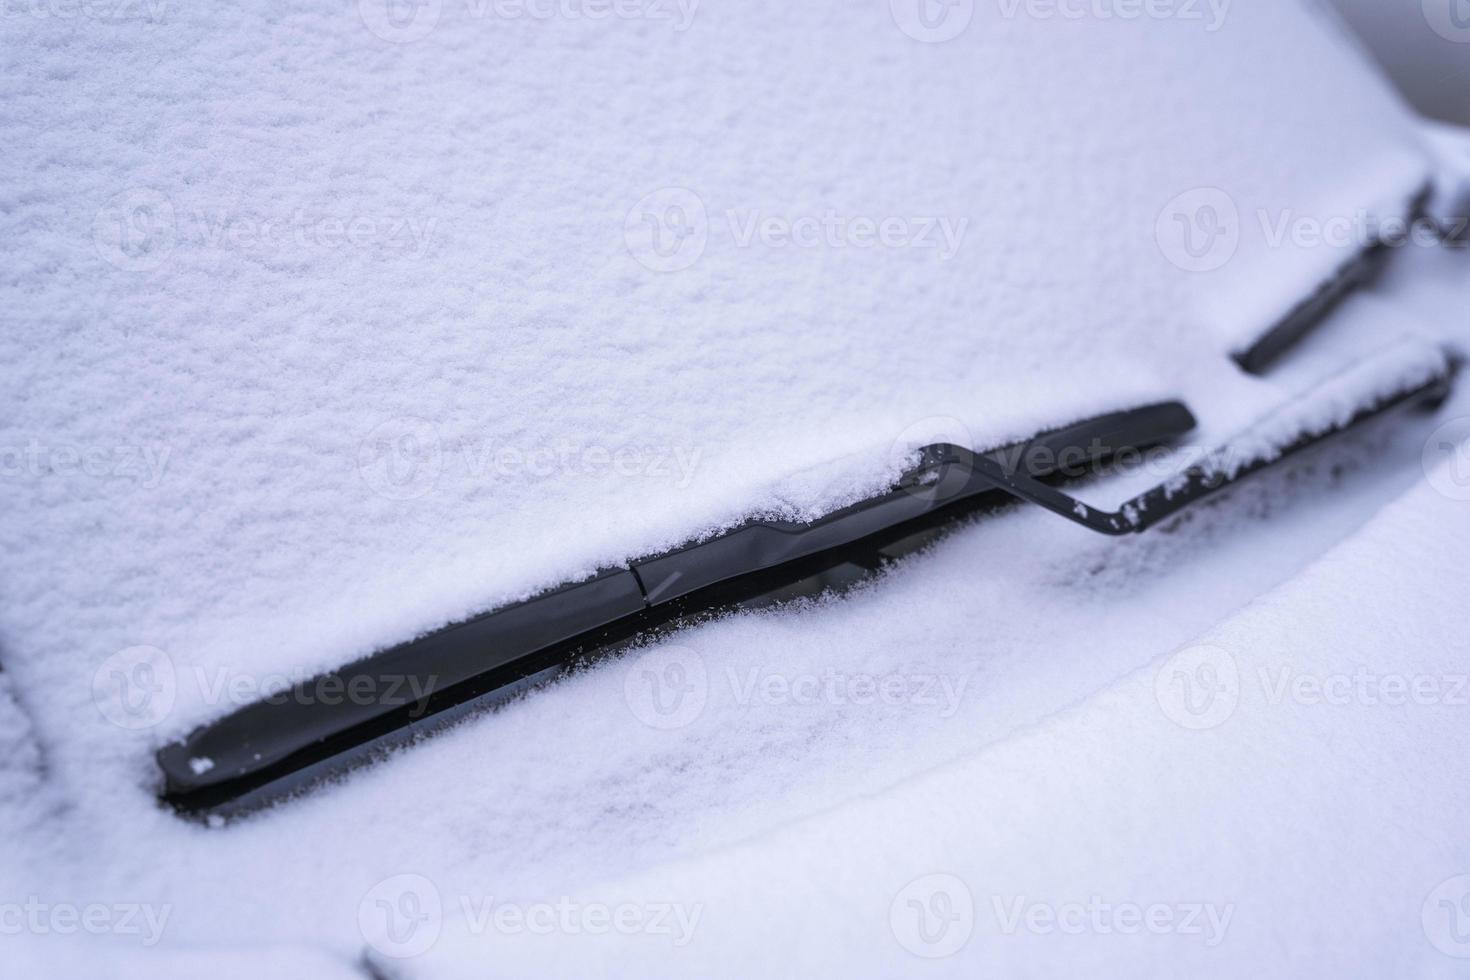 cubierto de nieve coche parabrisas, limpiaparabrisas espada en mullido primero nieve foto